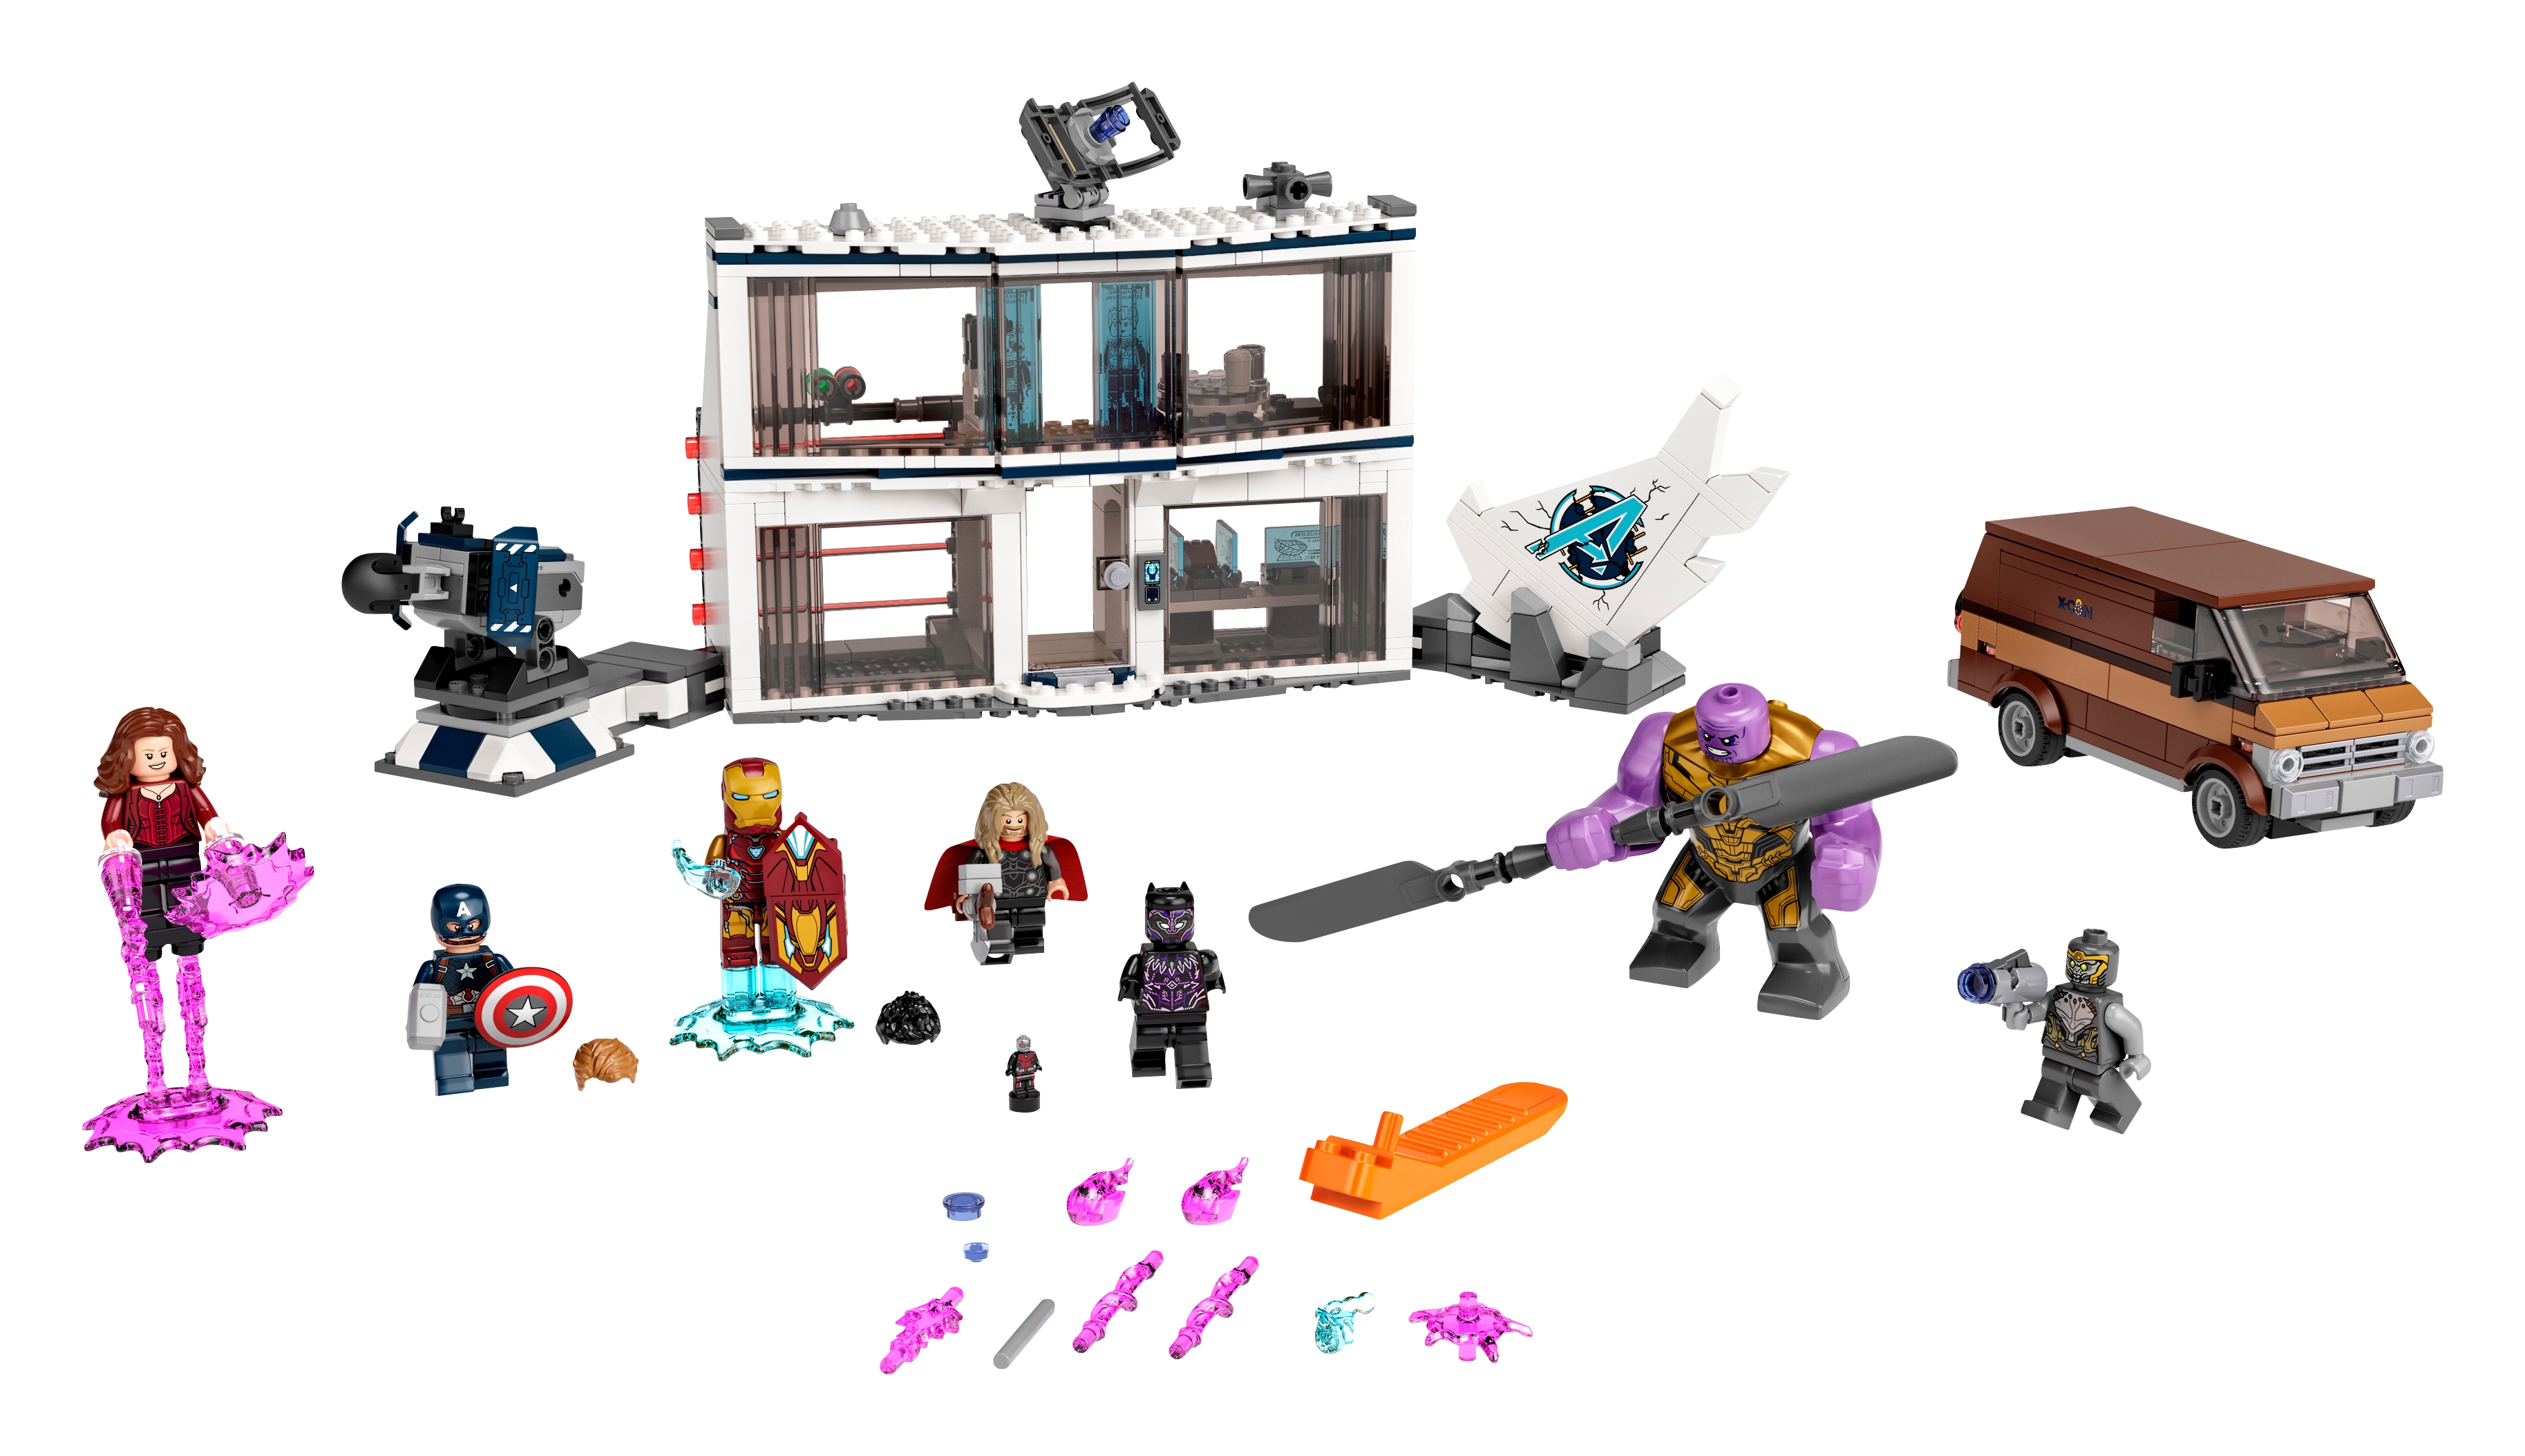 Elektricien baden matras Avengers: Endgame Final Battle 76192 | Marvel | Buy online at the Official  LEGO® Shop US